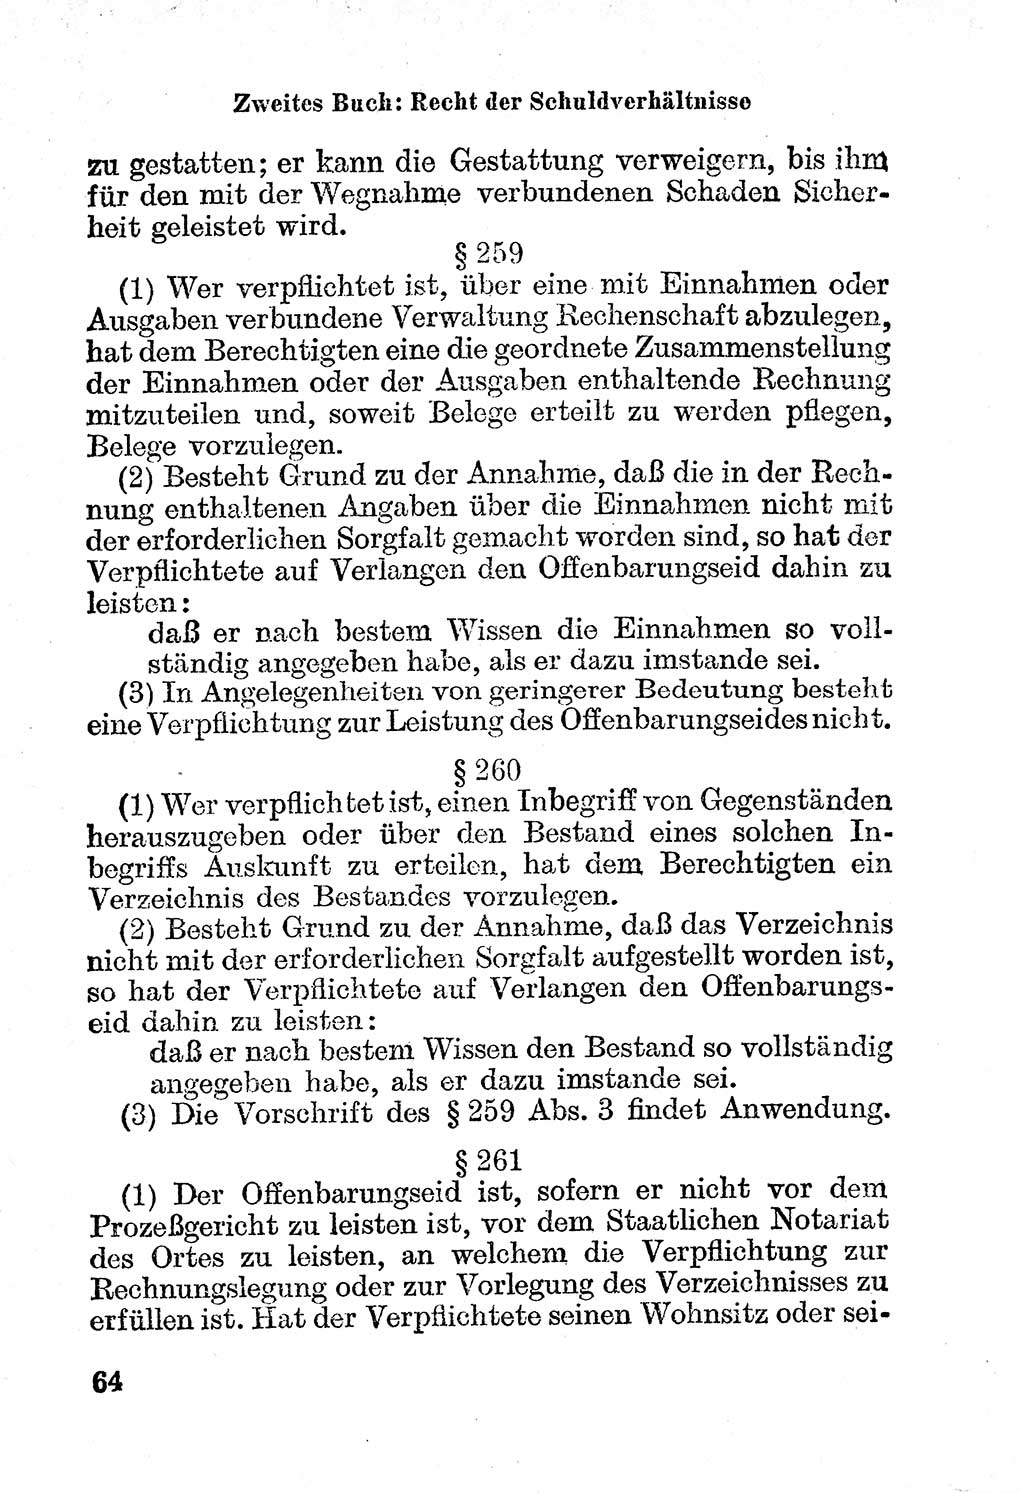 Bürgerliches Gesetzbuch (BGB) nebst wichtigen Nebengesetzen [Deutsche Demokratische Republik (DDR)] 1956, Seite 64 (BGB Nebenges. DDR 1956, S. 64)